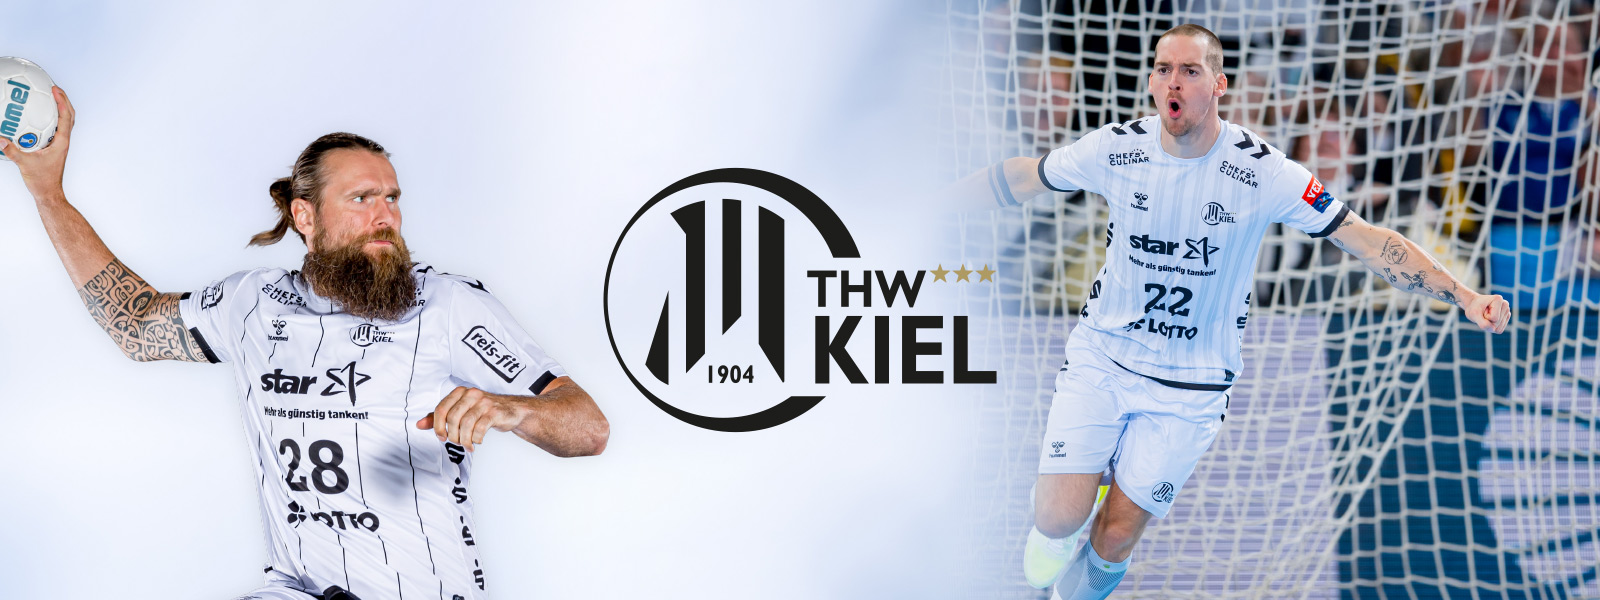 Immagine a due a due pazzi di Kiel con la barba sulla cucciolata a sinistra e altri giocatori quando applausi in campo a destra nel mezzo, il logo del club